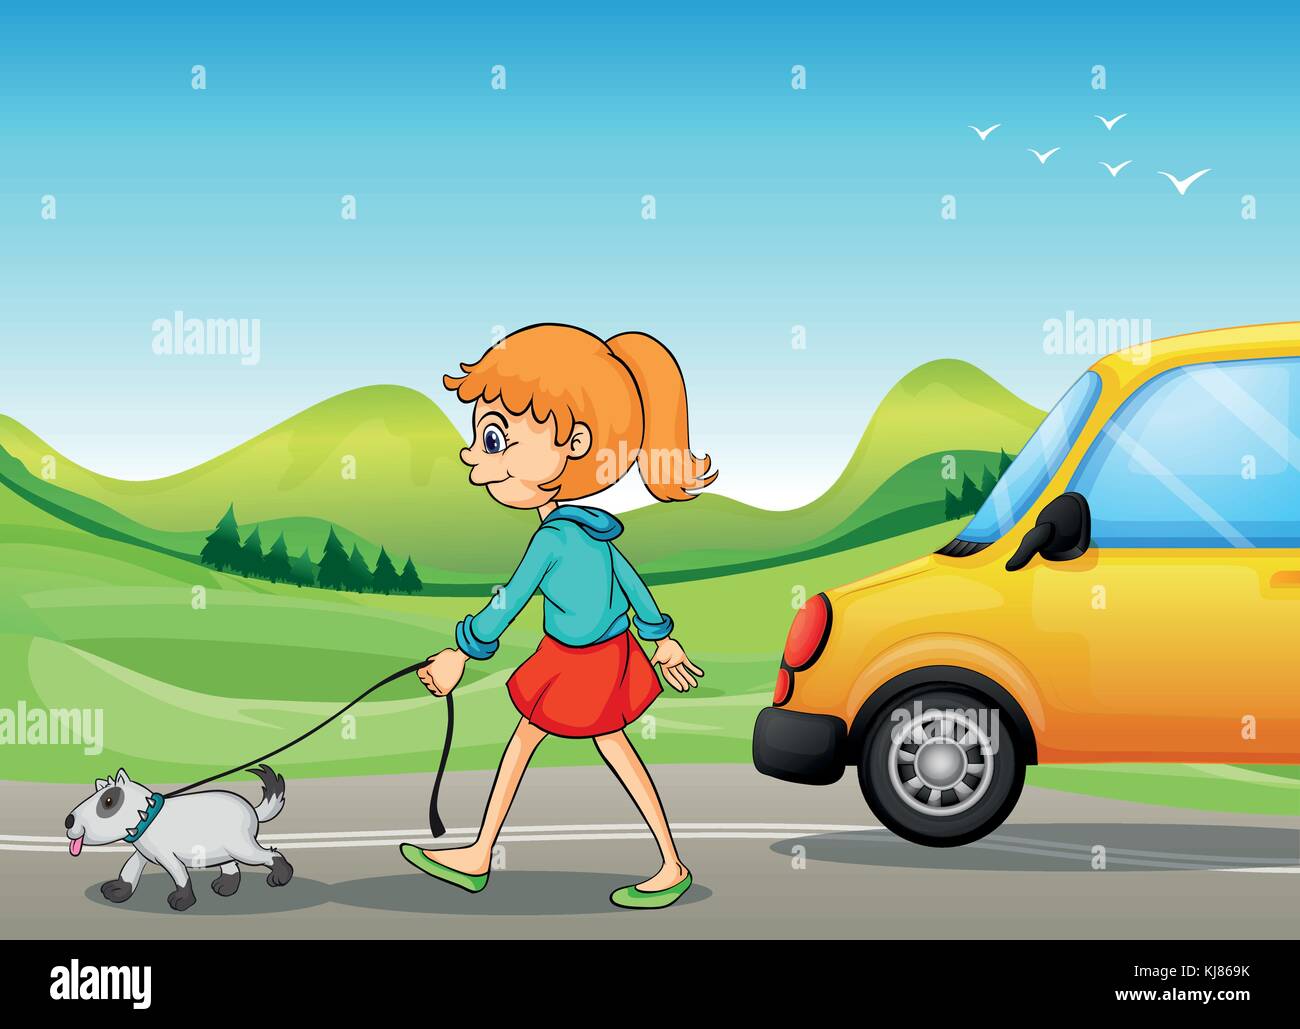 Ilustración de una chica con un perro caminando por la calle Ilustración del Vector